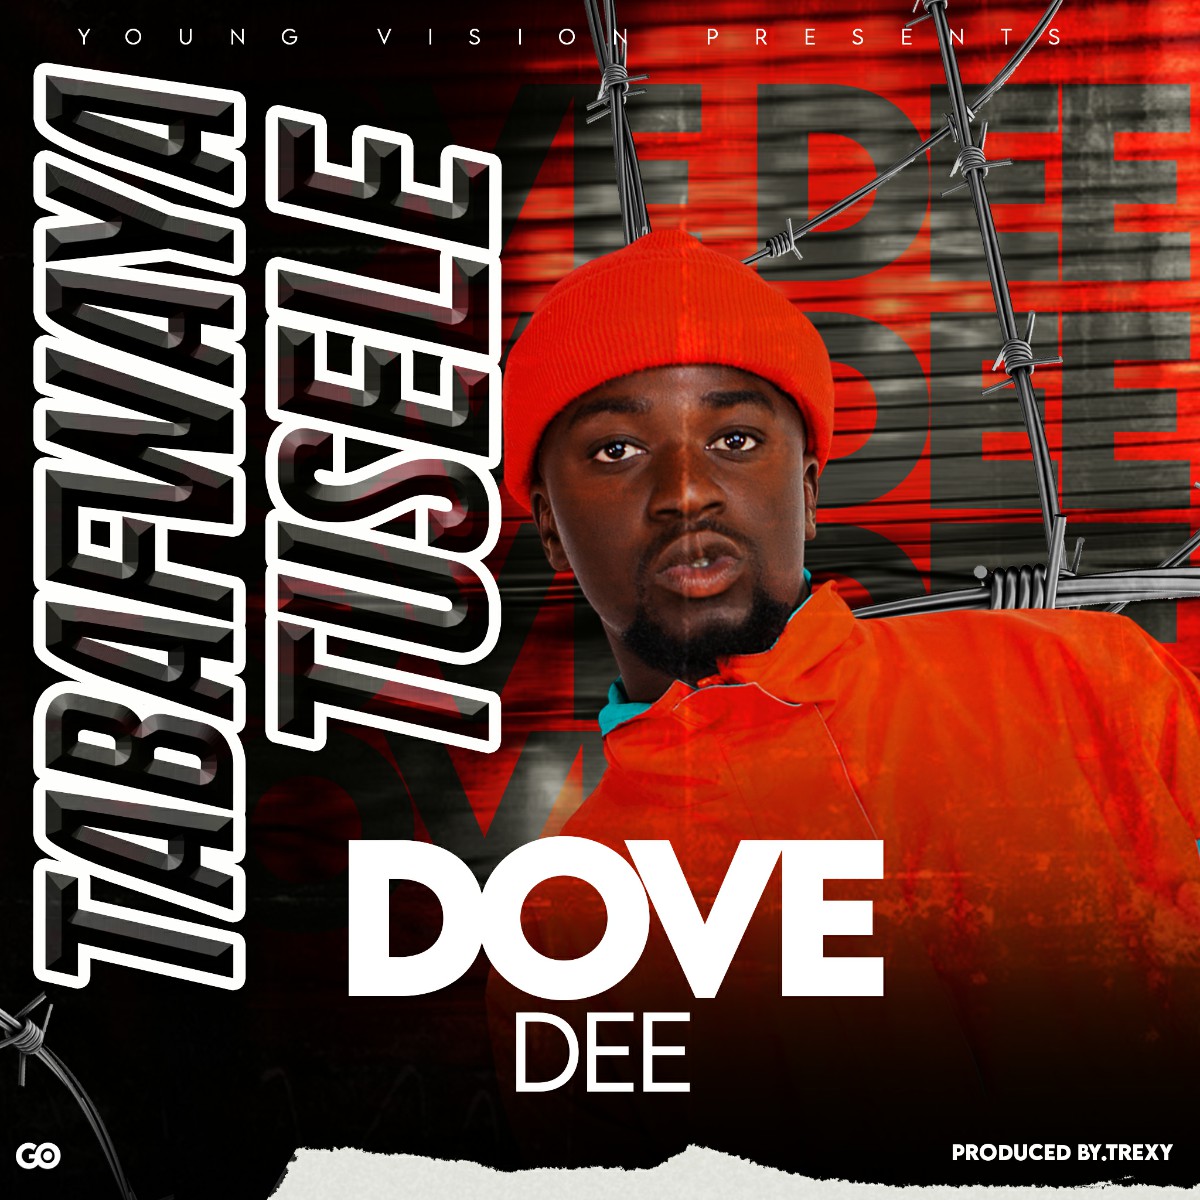 Dove Dee - Tabafwaya Tusele (Prod. Trexy)